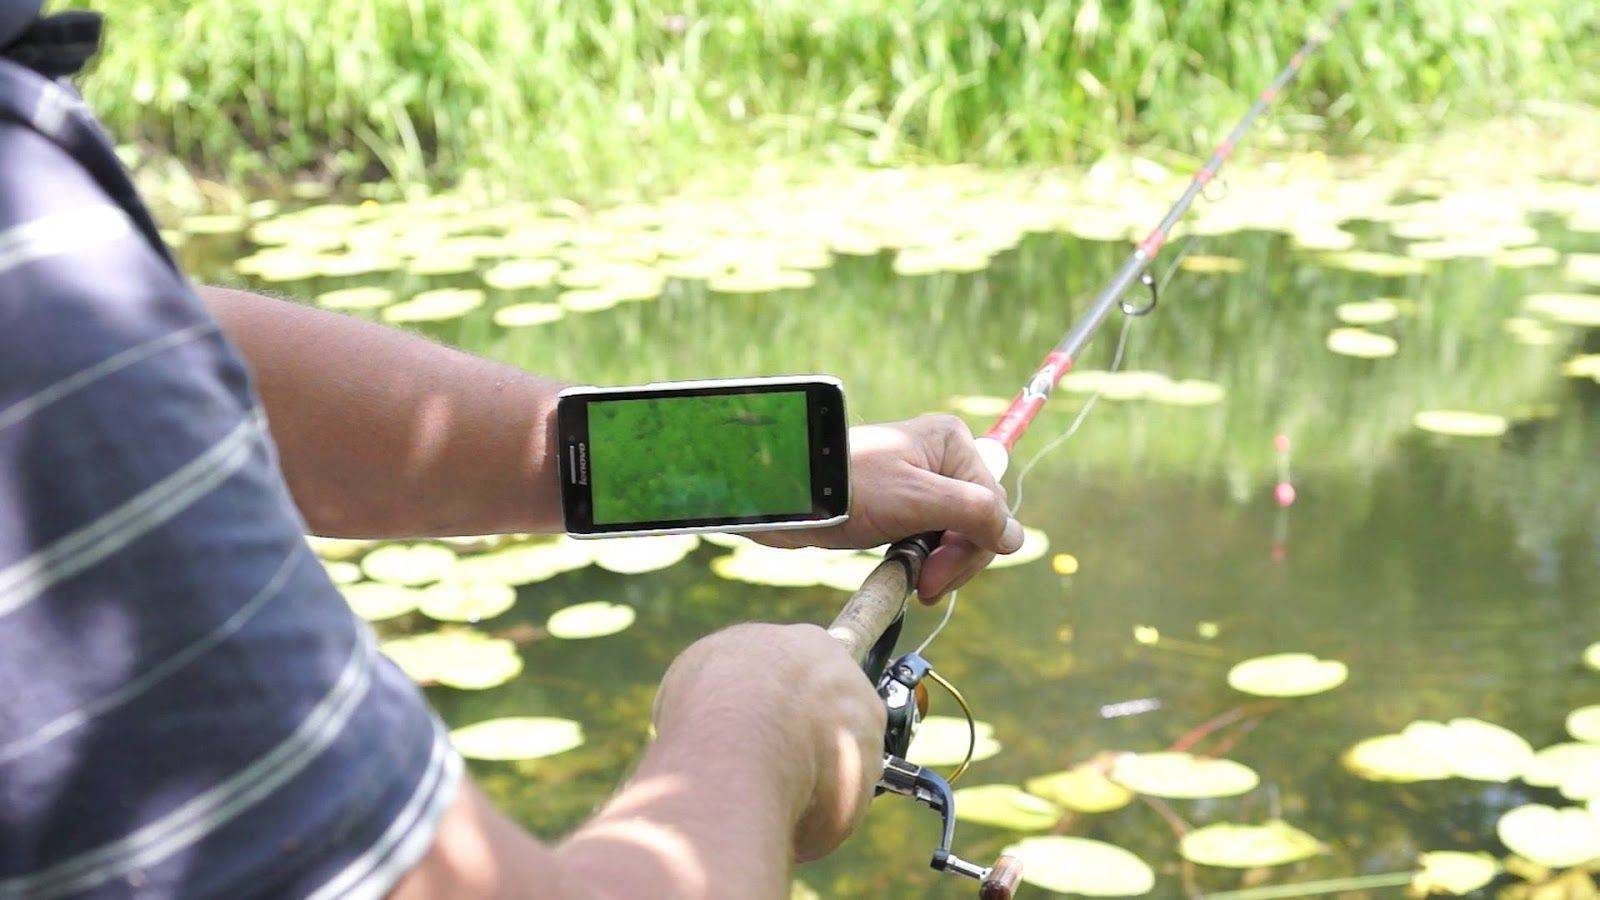 Удочки для рыбалки с видеокамерой